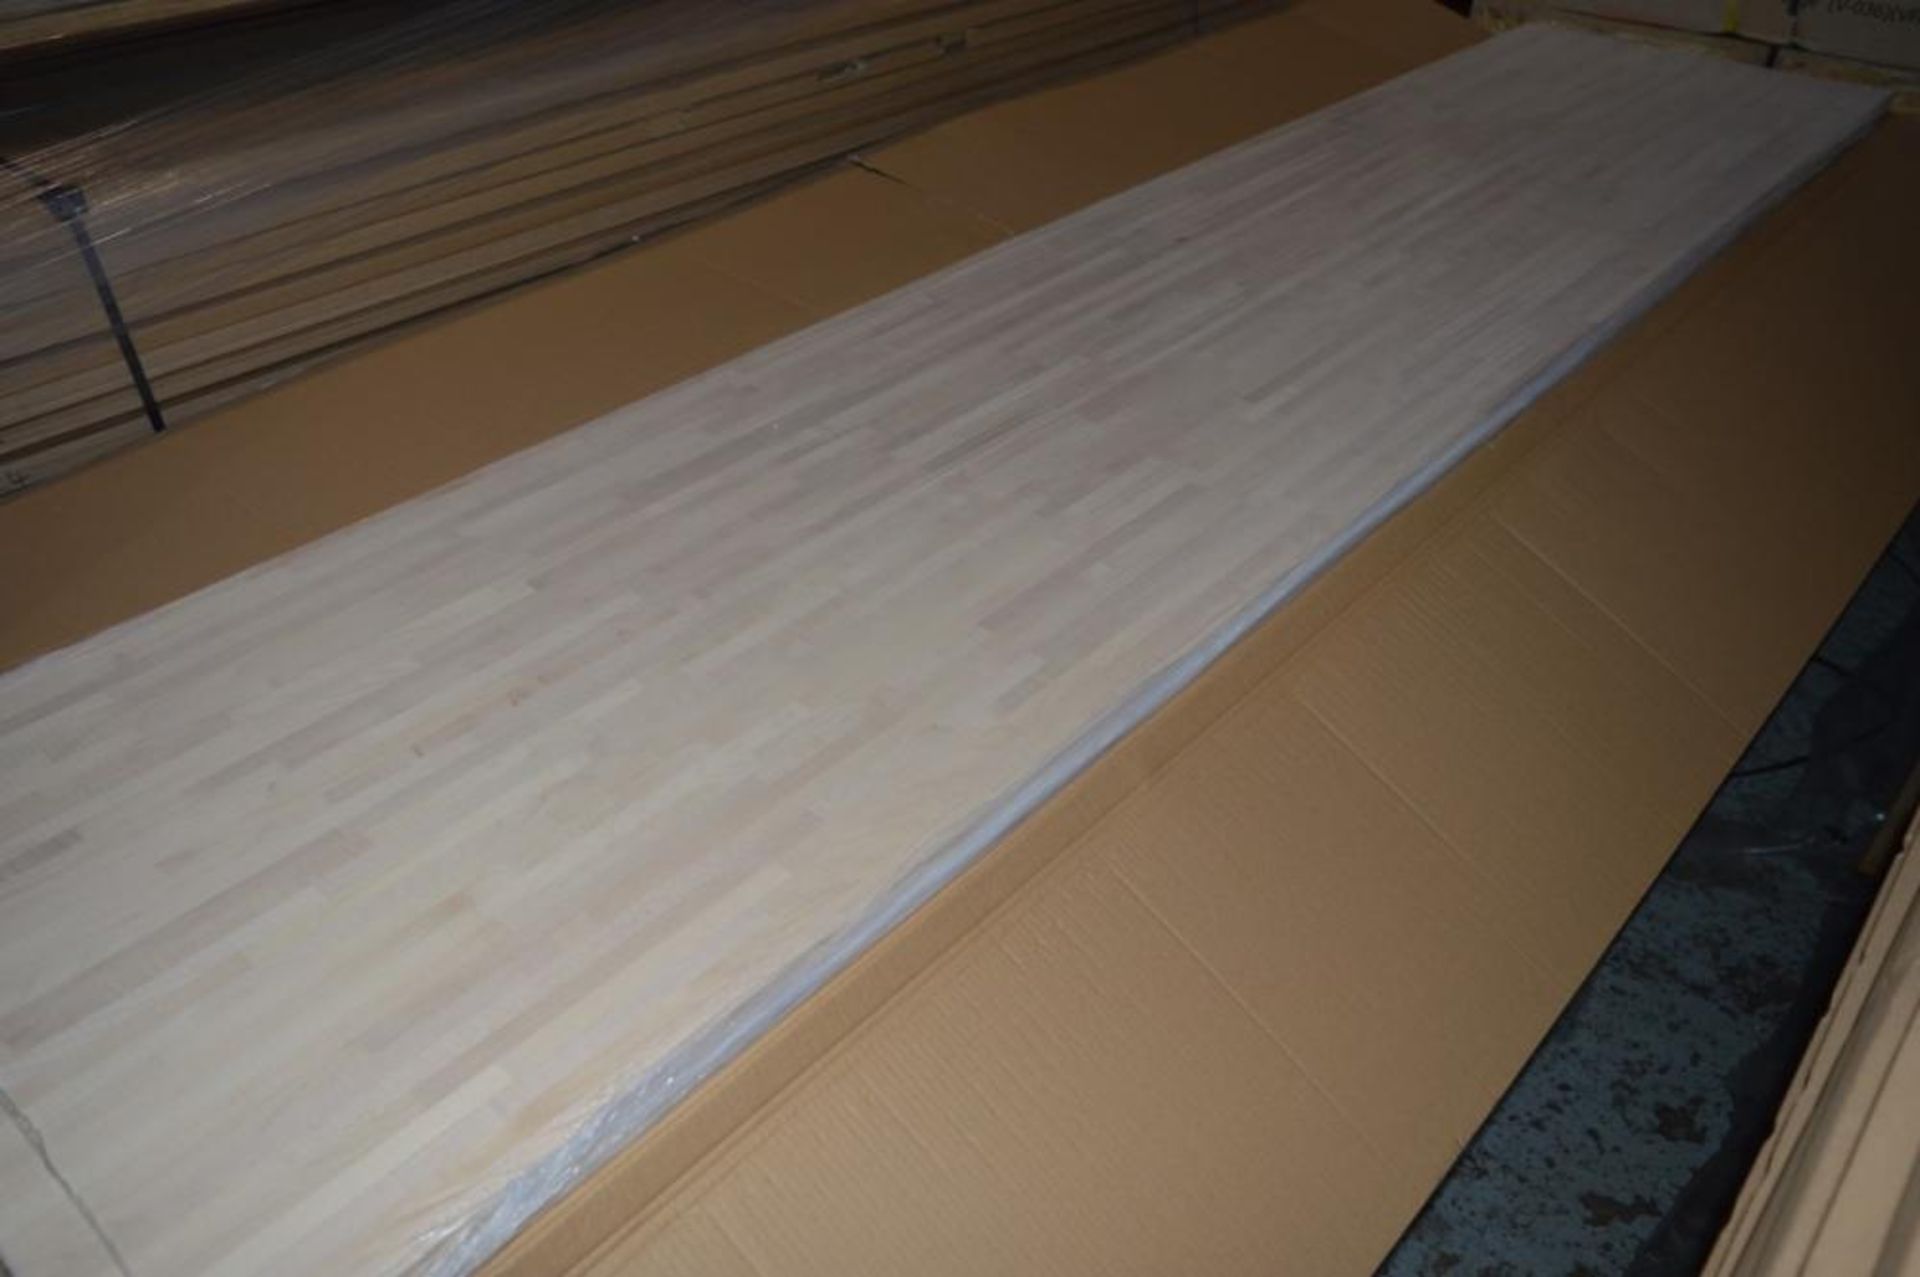 1 x Solid Wood Kitchen Worktop - EUROPEAN MAPLE - Maple Blockwood Kitchen Worktop - Size: 3000 x 900 - Image 2 of 5